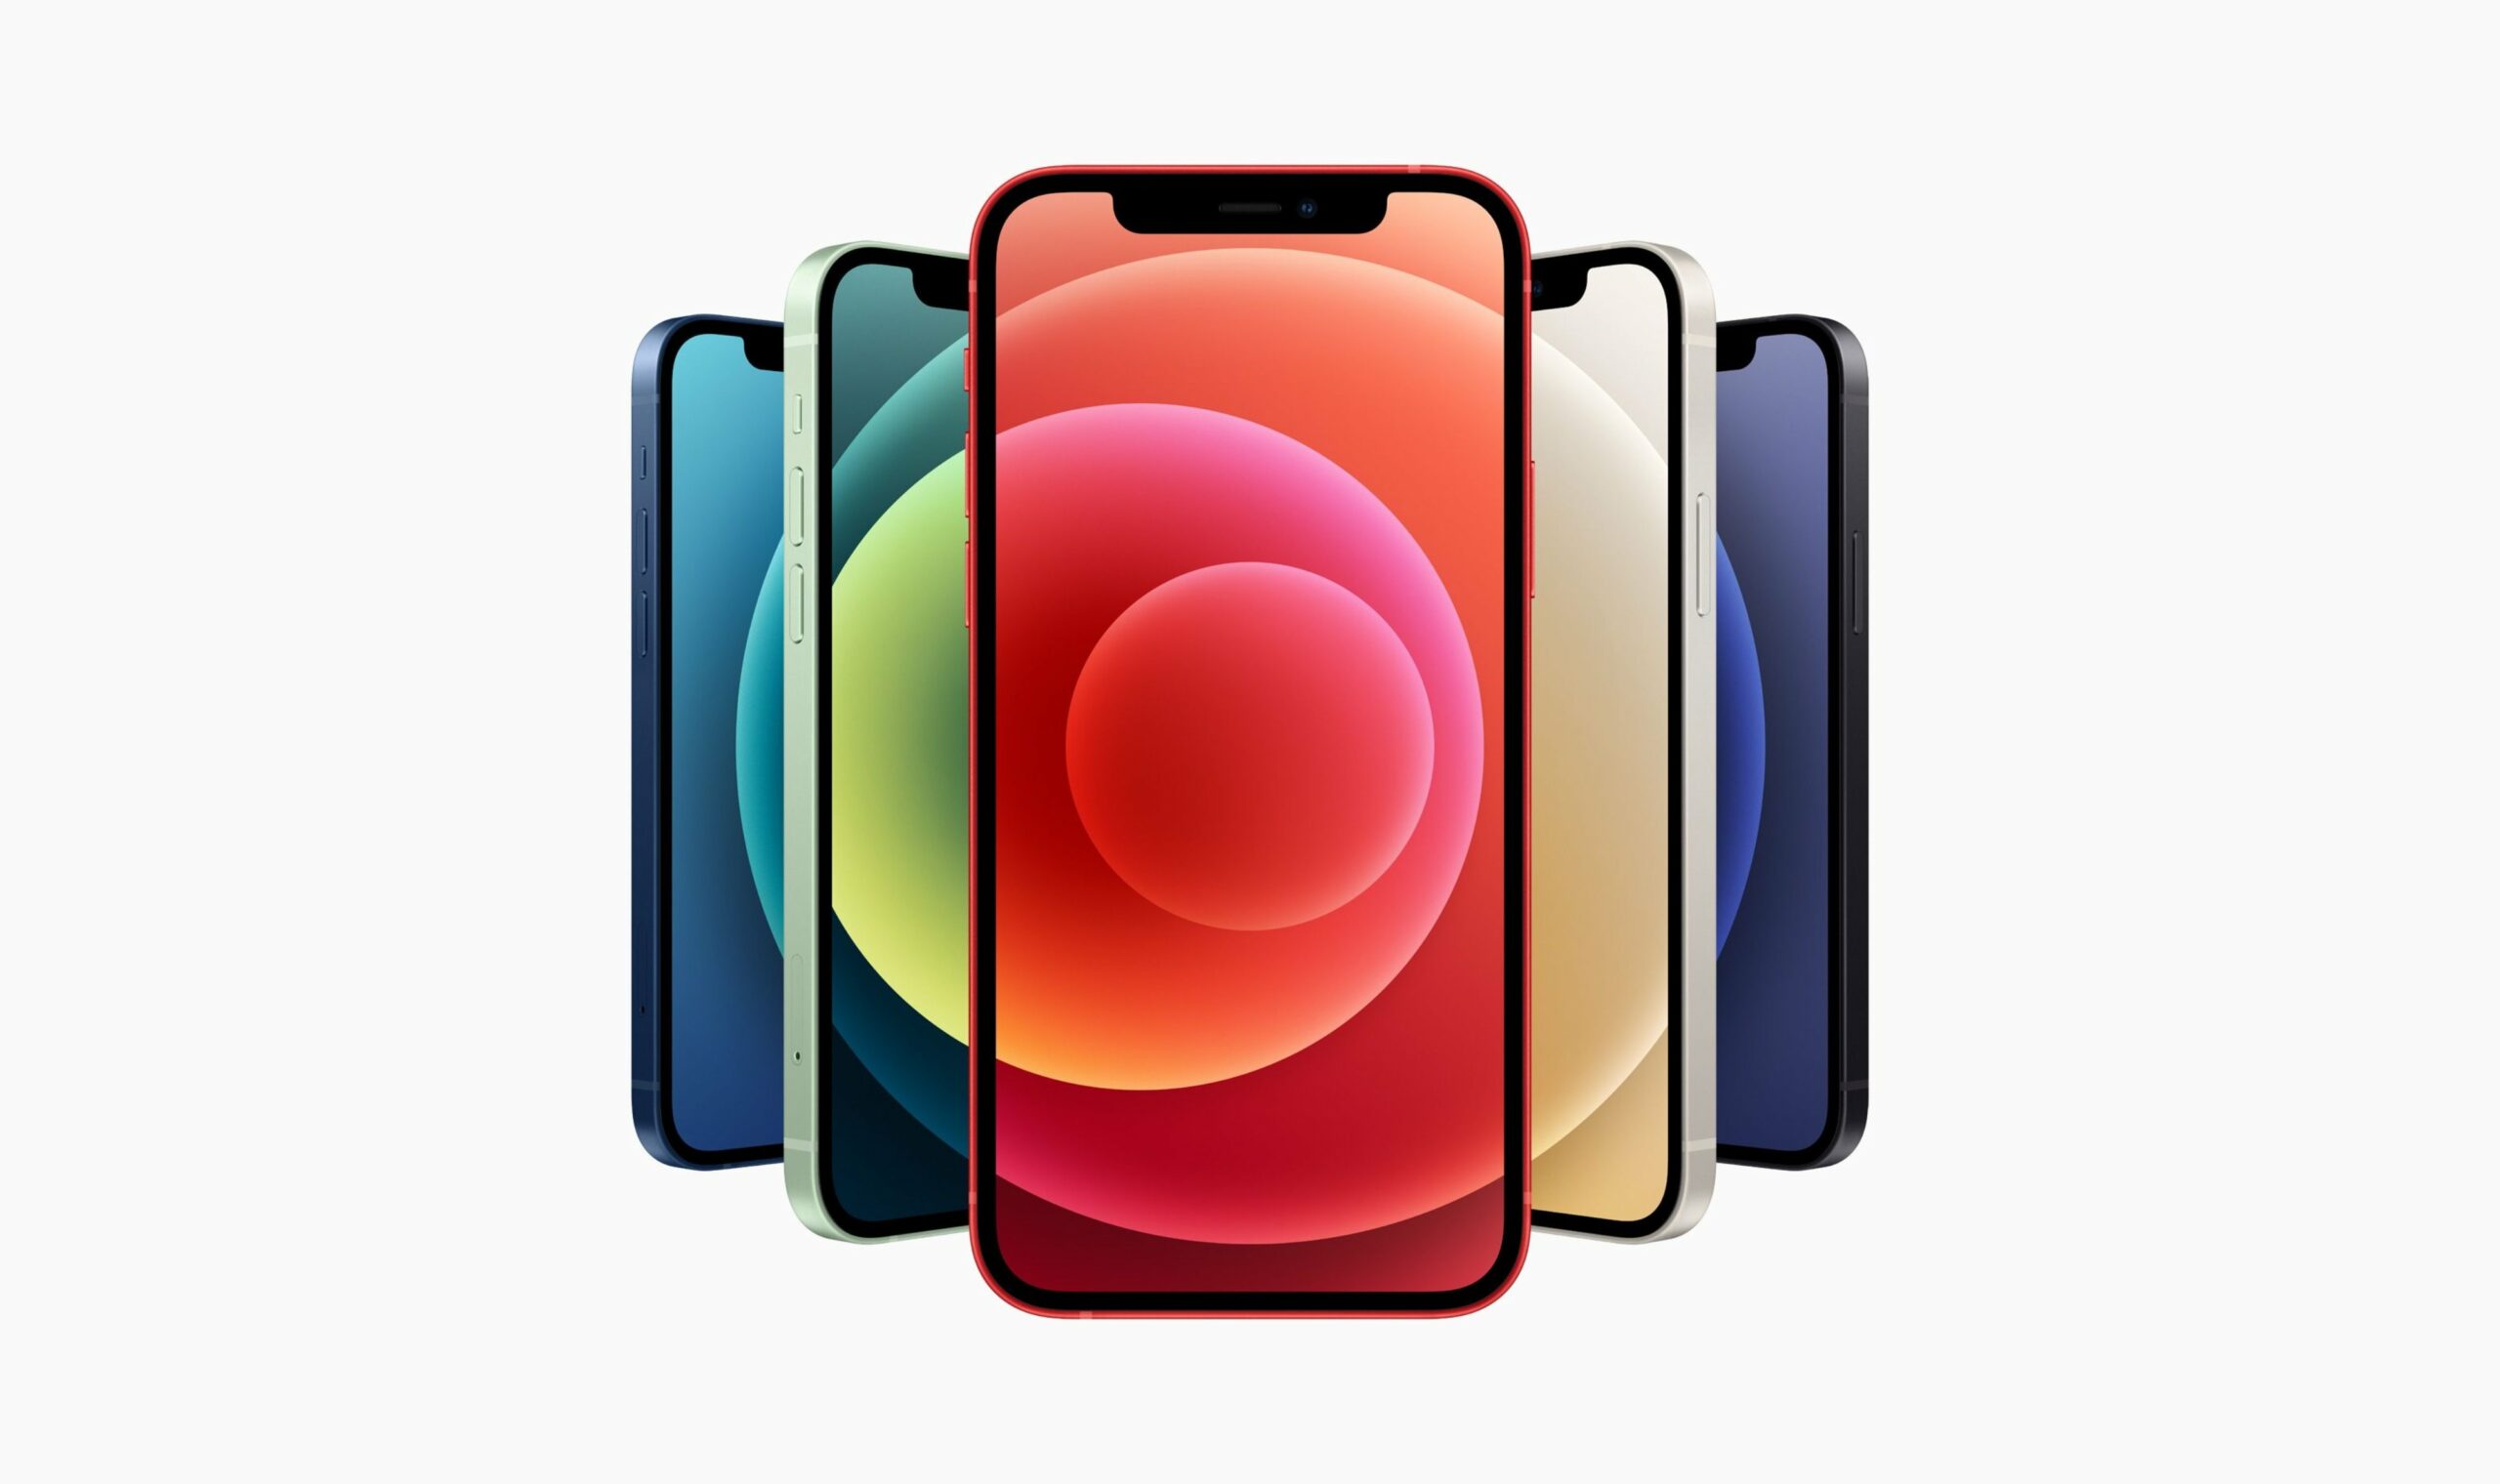 Apple iPhone 12 Toutes les couleurs présentées